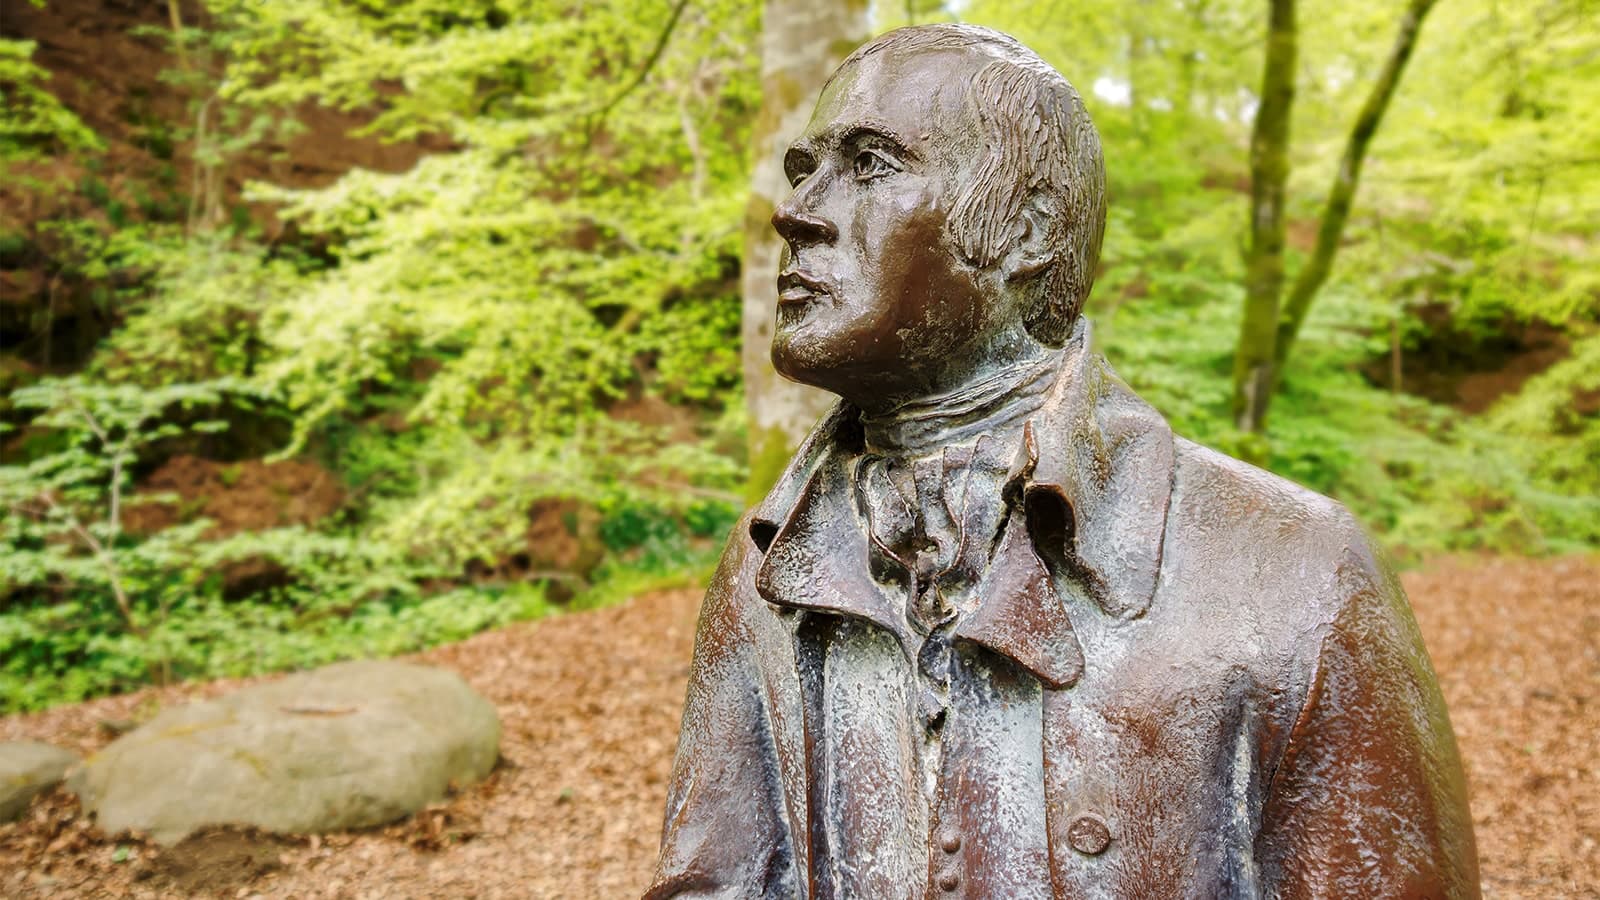 Statue of poet Robert Burns in wooded area